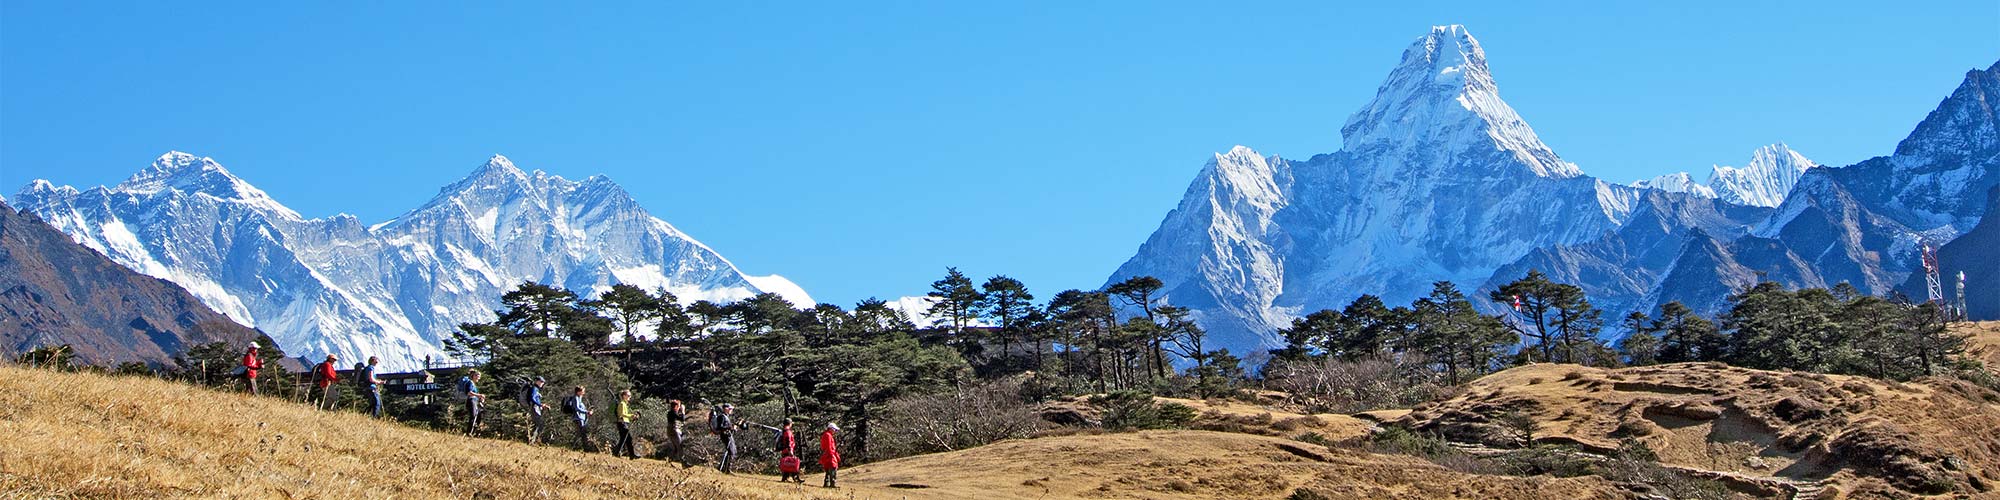 Everest-Trekking in Himalaya